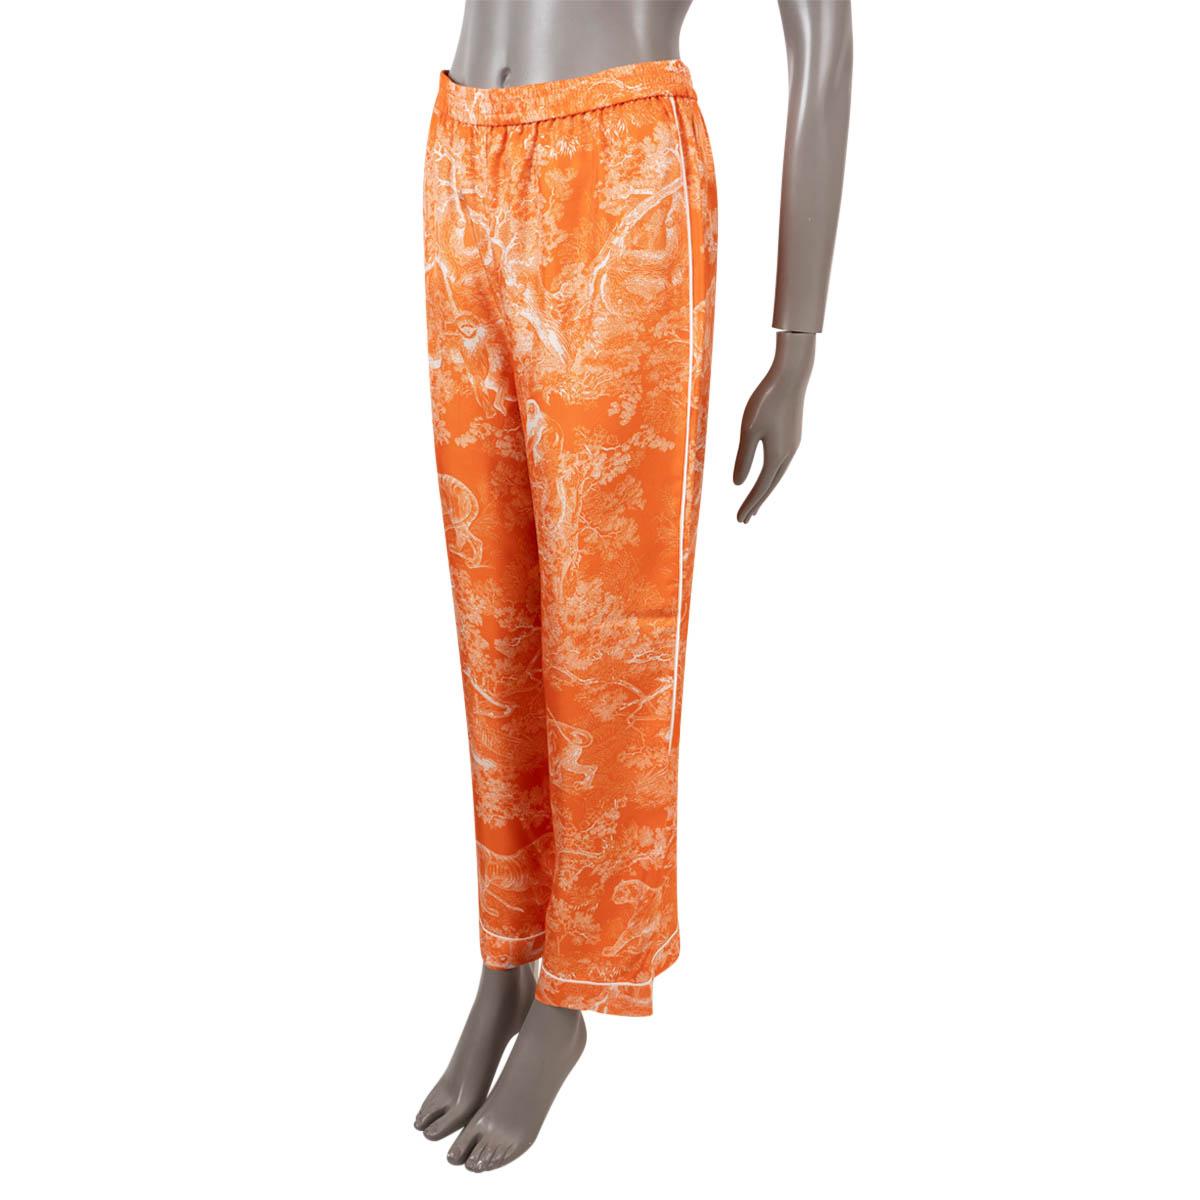 100% authentische Christian Dior Pyjamahose aus fluoreszierendem orangefarbenem Toile de Jouy Reverse-Seiden-Twill (100%). Mit kontrastierenden weißen Paspeln, weitem Bein und elastischem Bund. Wurde getragen und ist in ausgezeichnetem